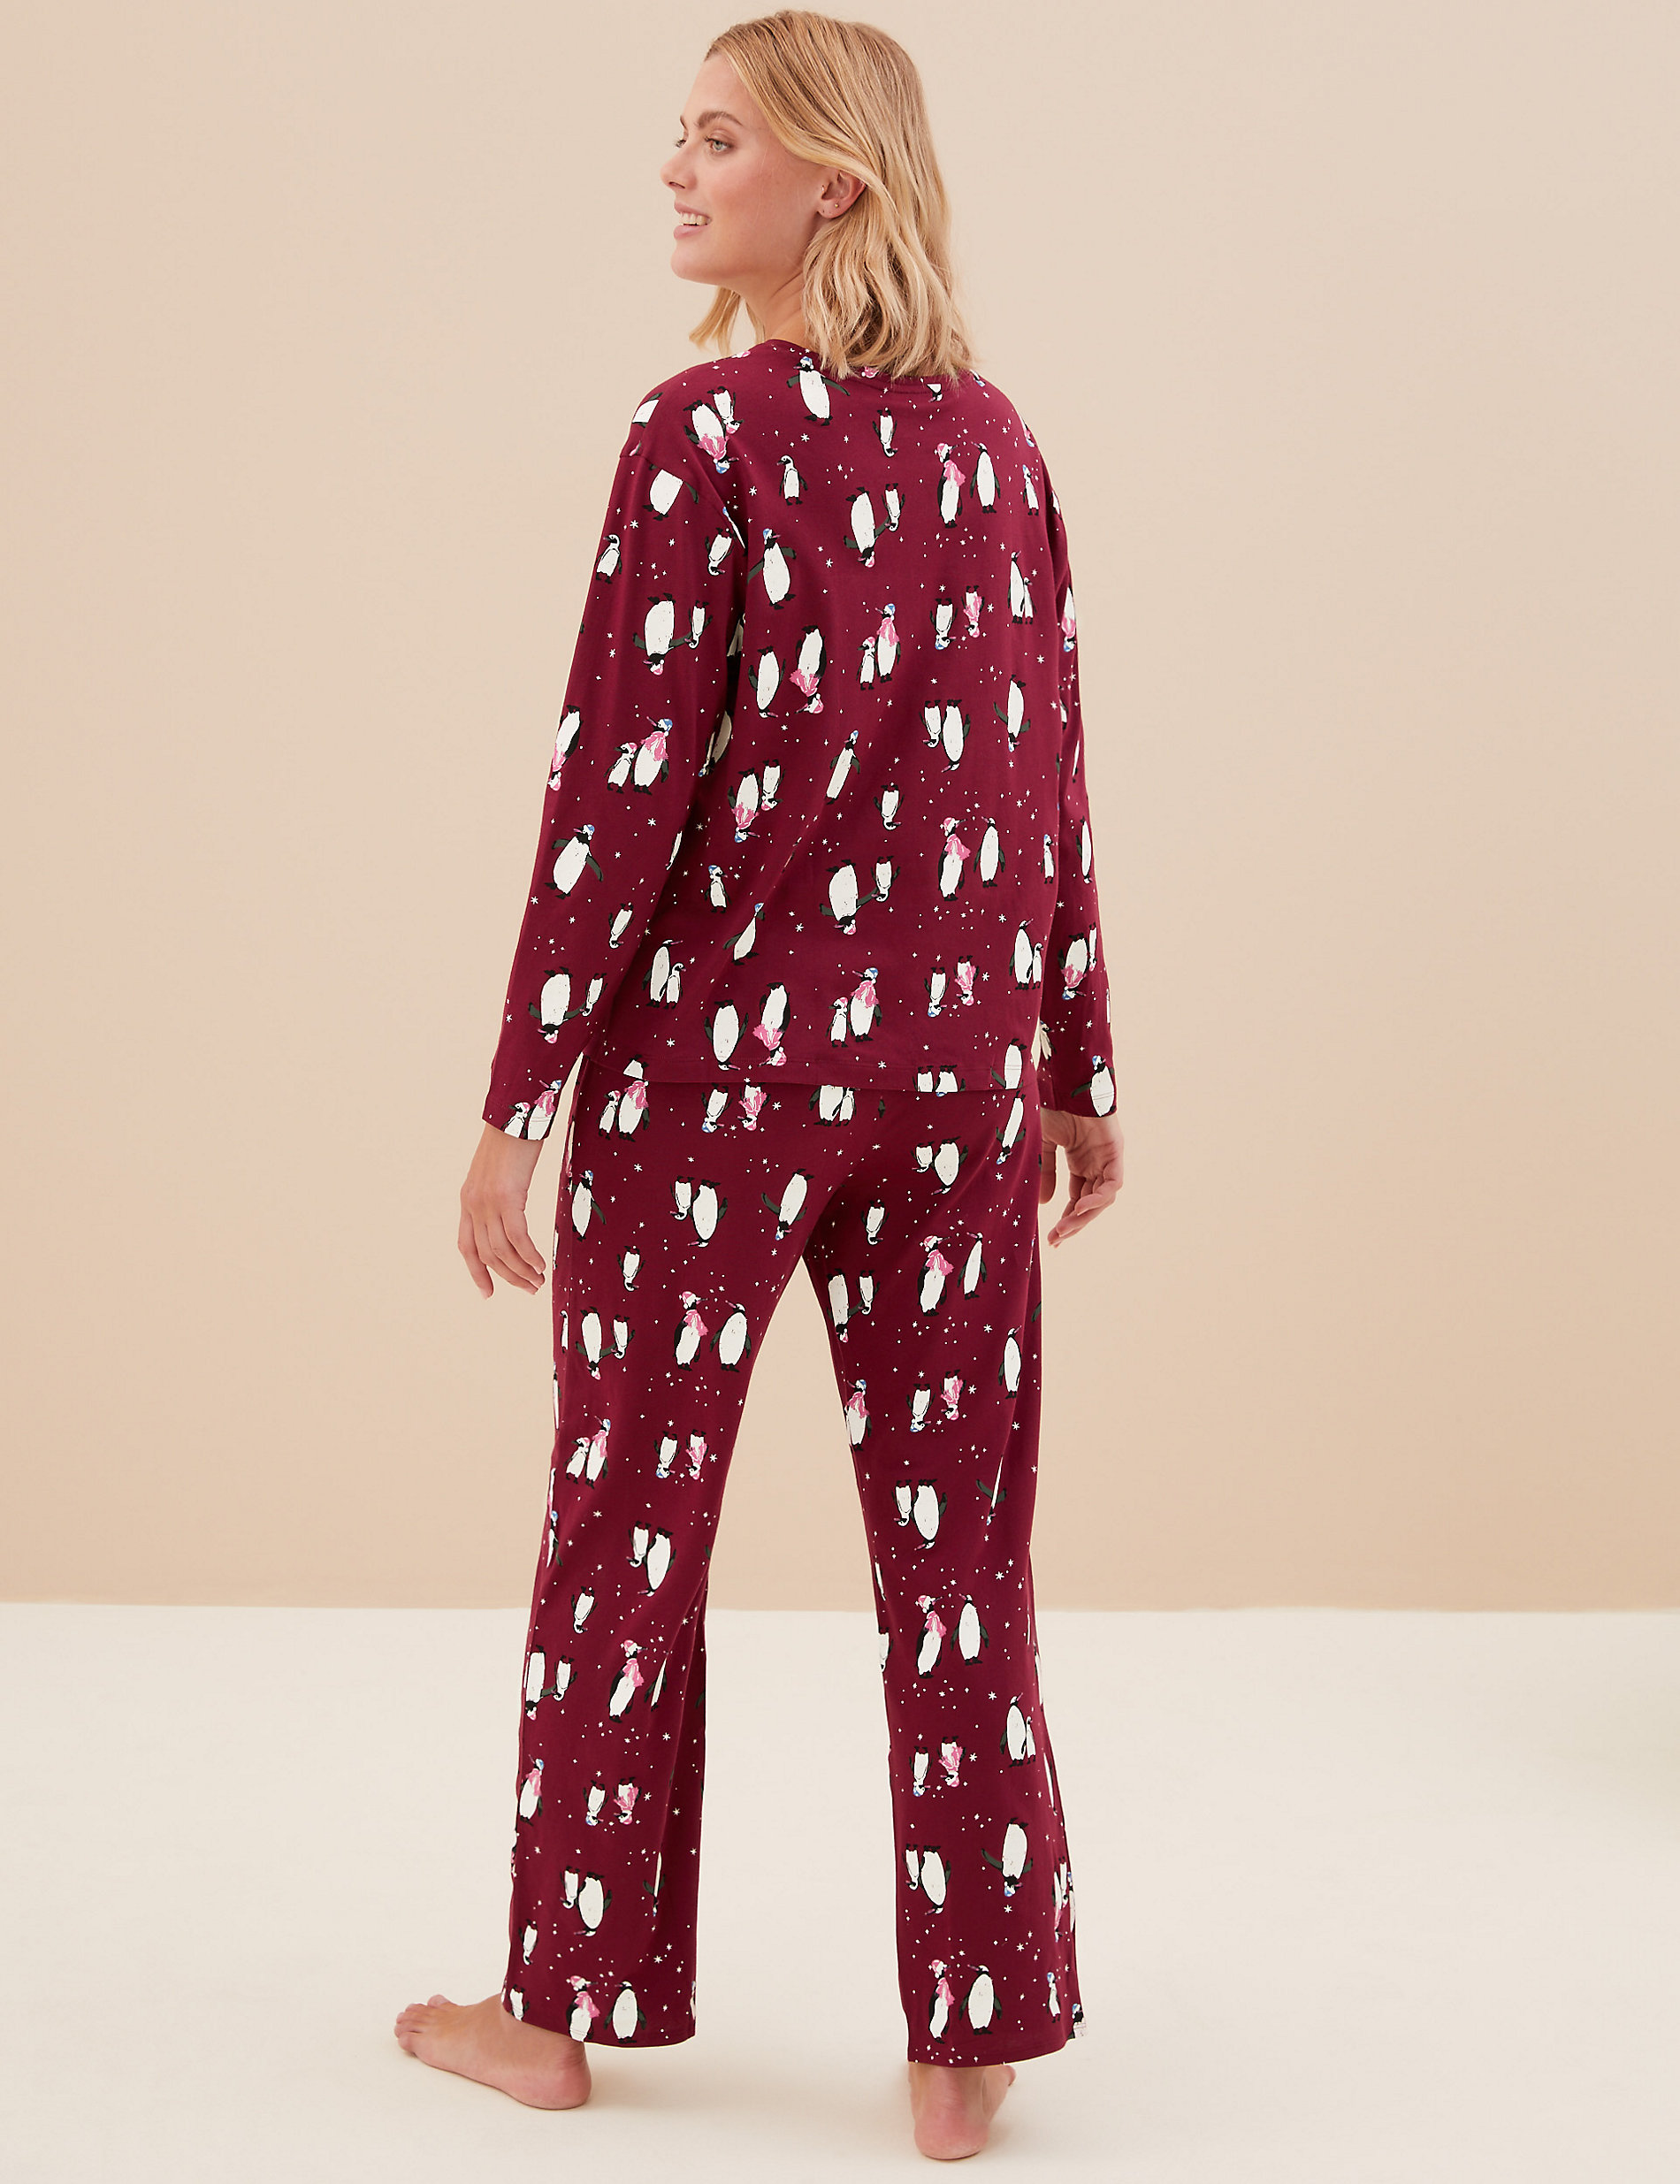 Pijama 100% algodón con diseño de pingüinos